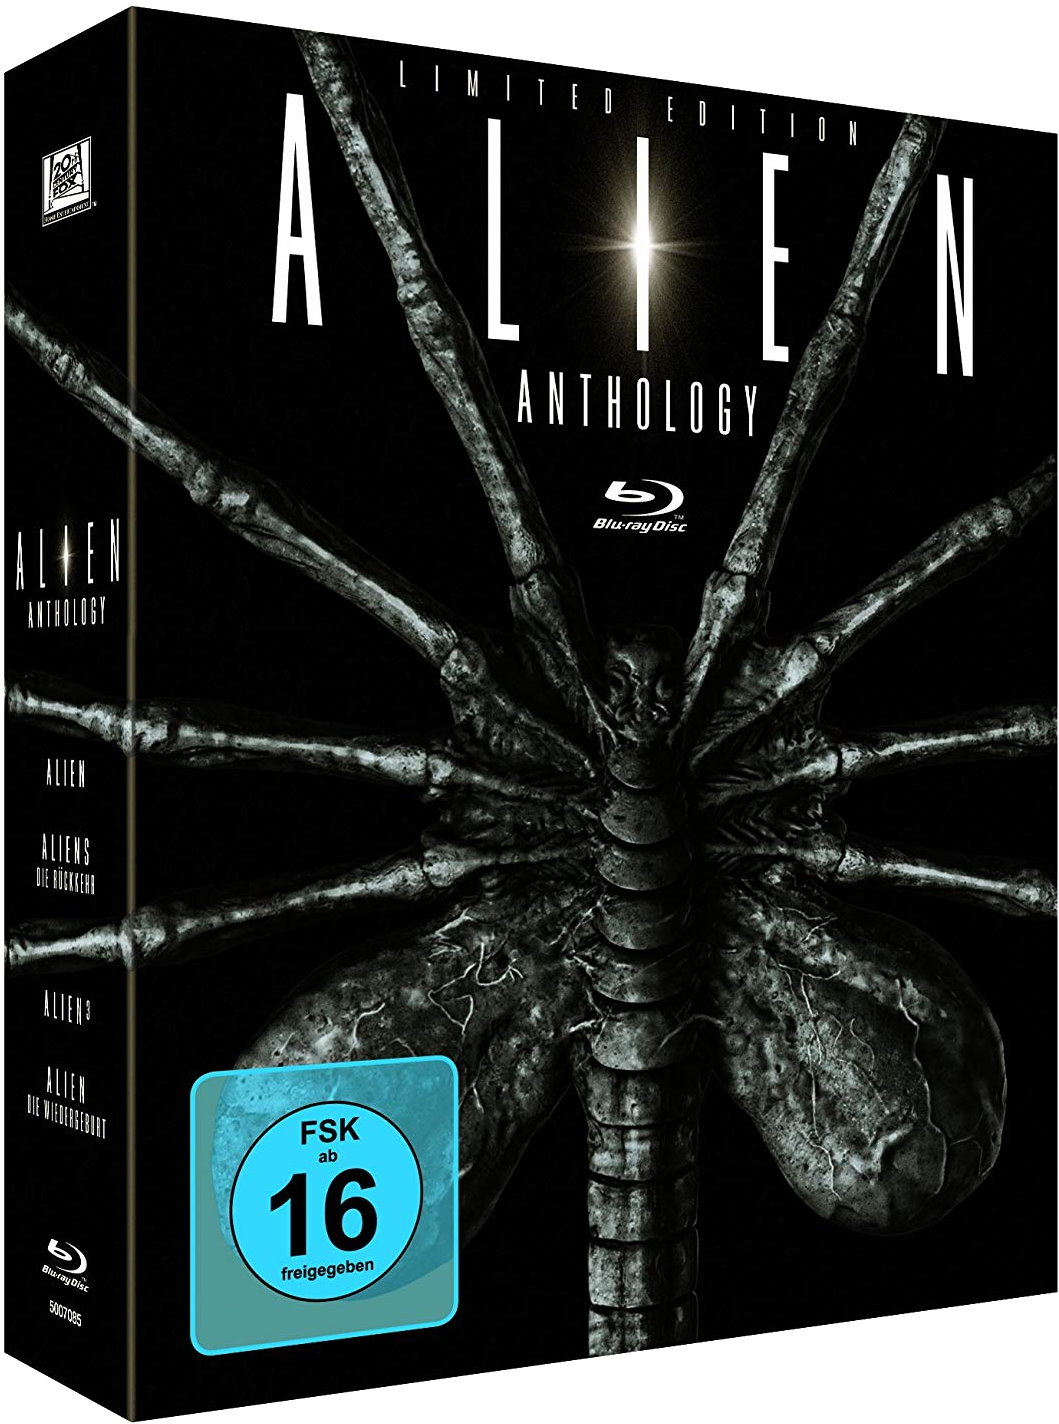 Cover - Alien³.jpg